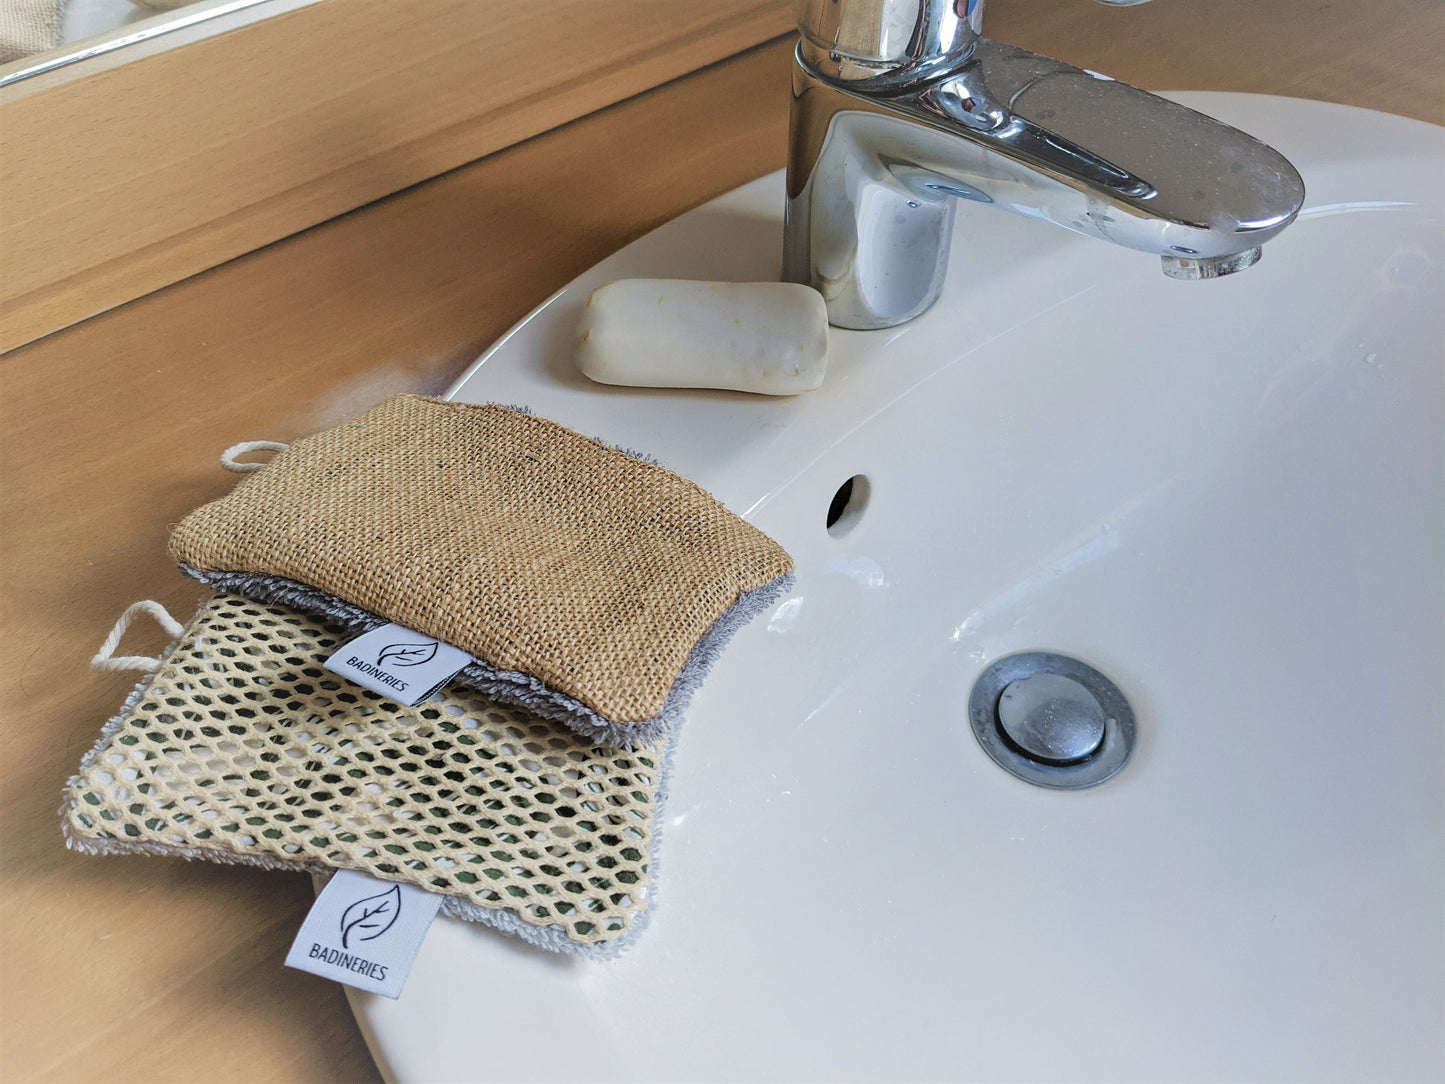 Eponges à récurer plates lavables, durables et réutilisables